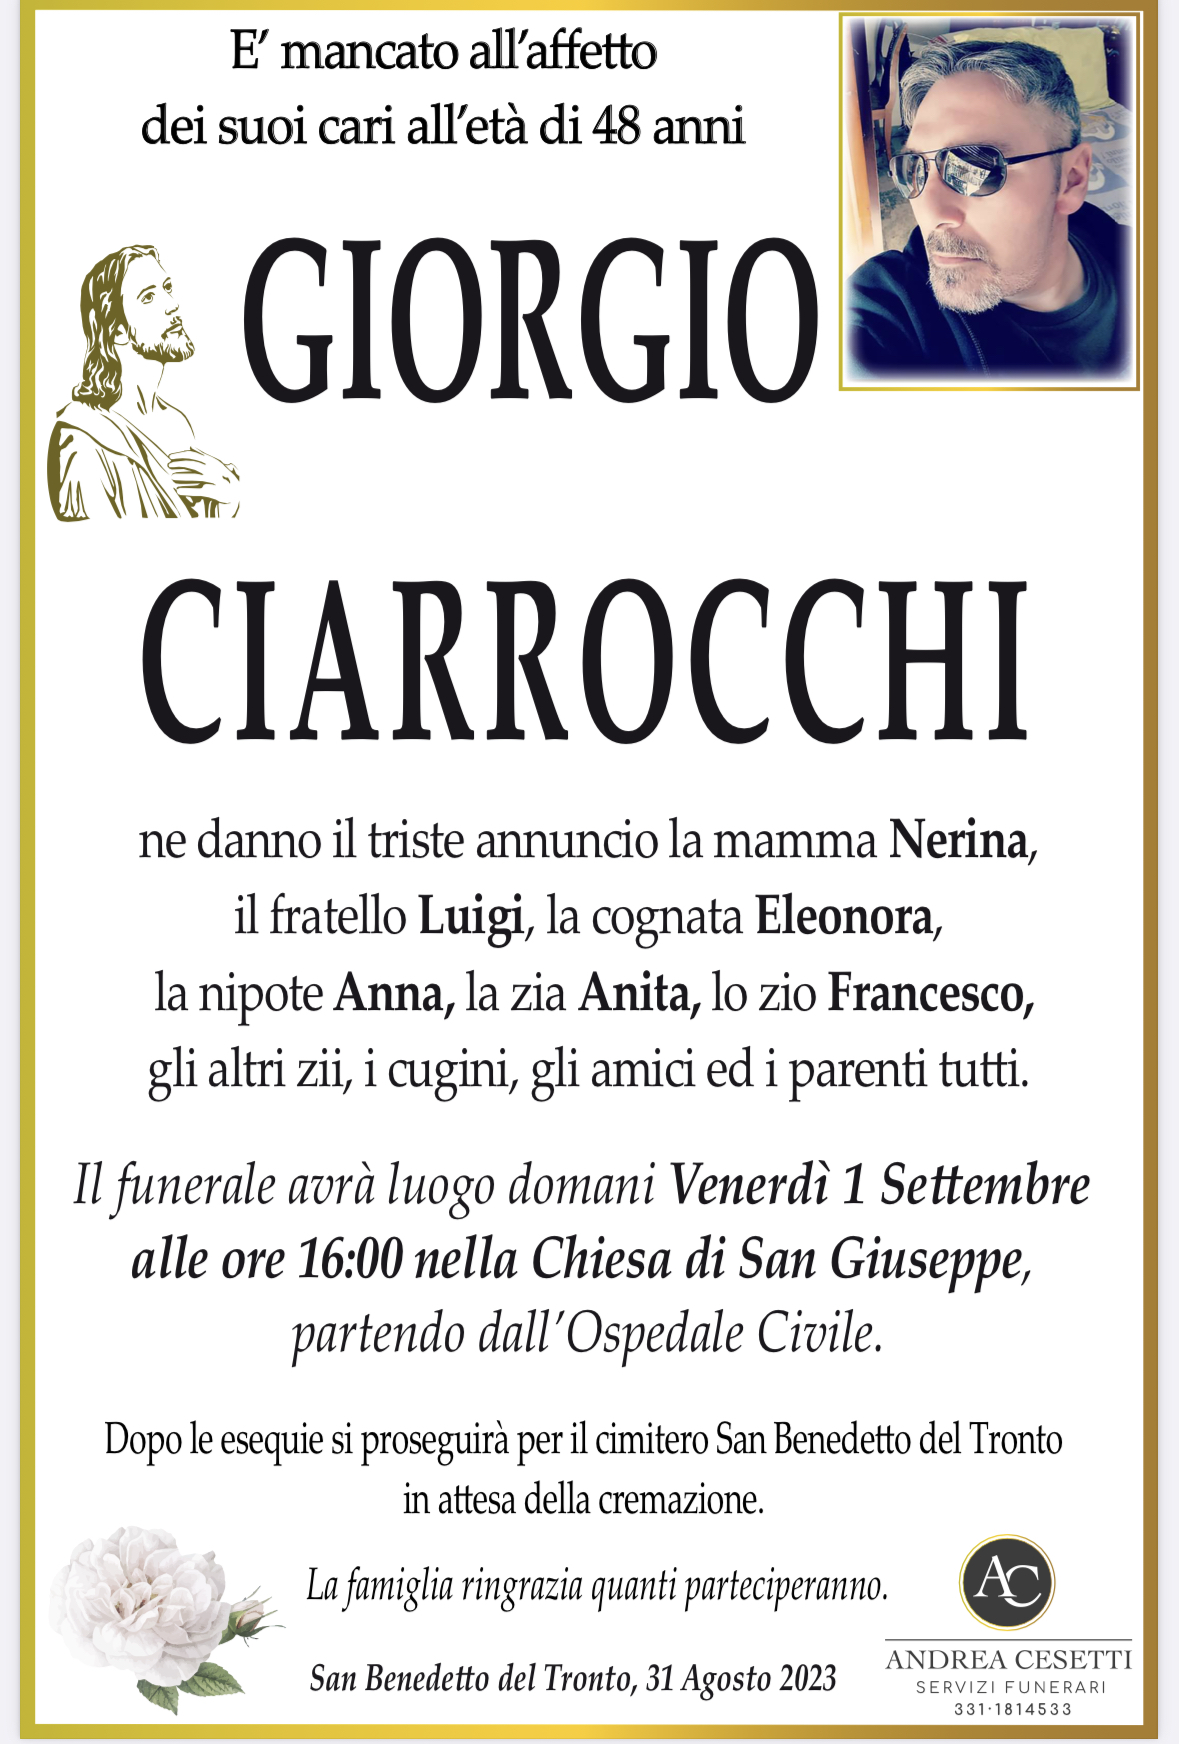 Giorgio Ciarrocchi